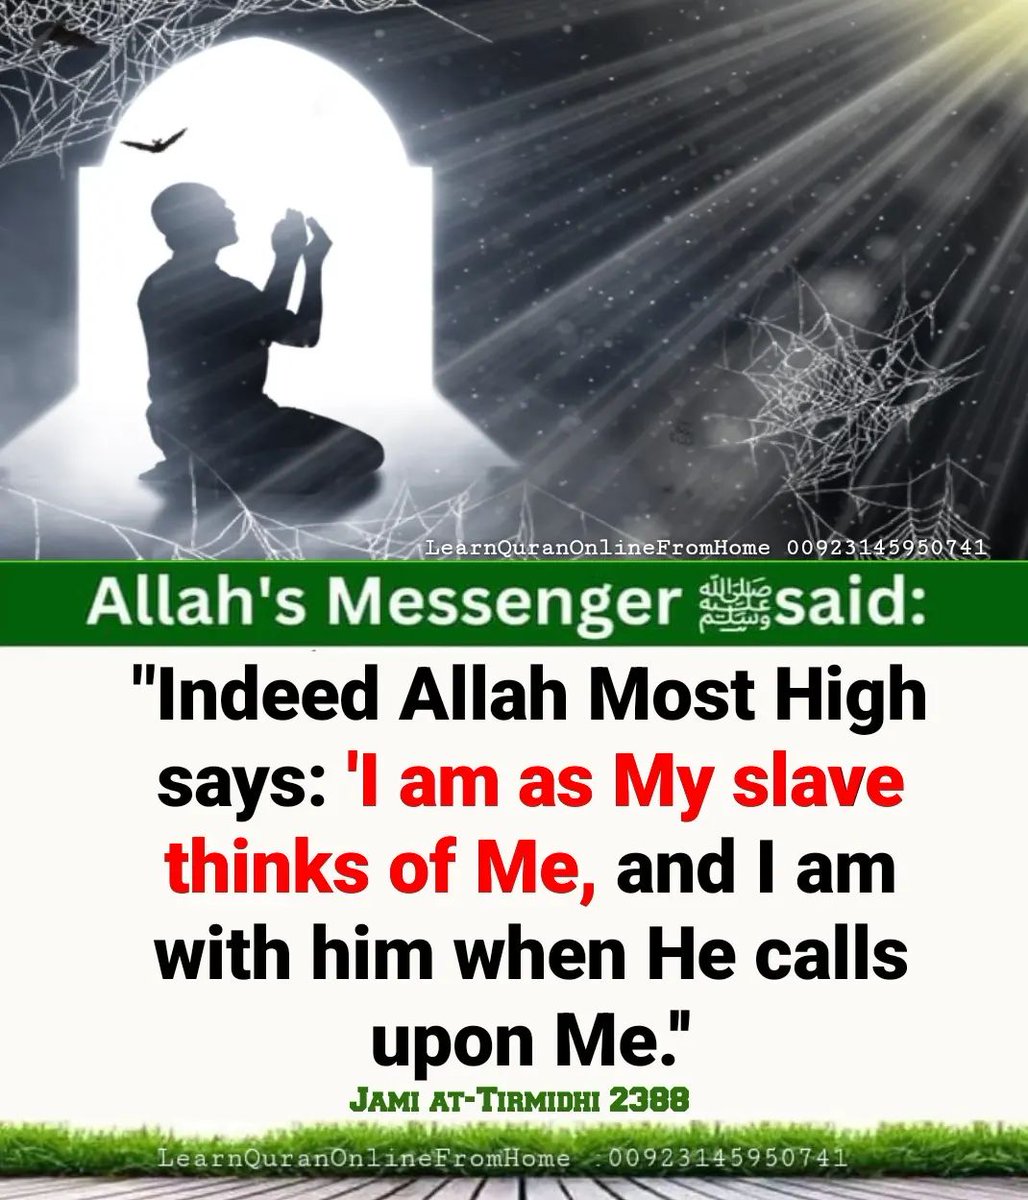 𝐀𝐥𝐥𝐚𝐡'𝐬 𝐌𝐞𝐬𝐬𝐞𝐧𝐠𝐞𝐫 (ﷺ) 𝐬𝐚𝐢𝐝: 'Indeed Allah Most High says: 'I am as My slave thinks of Me, and I am with him when He calls upon Me.' Jami at-Tirmidhi 2388